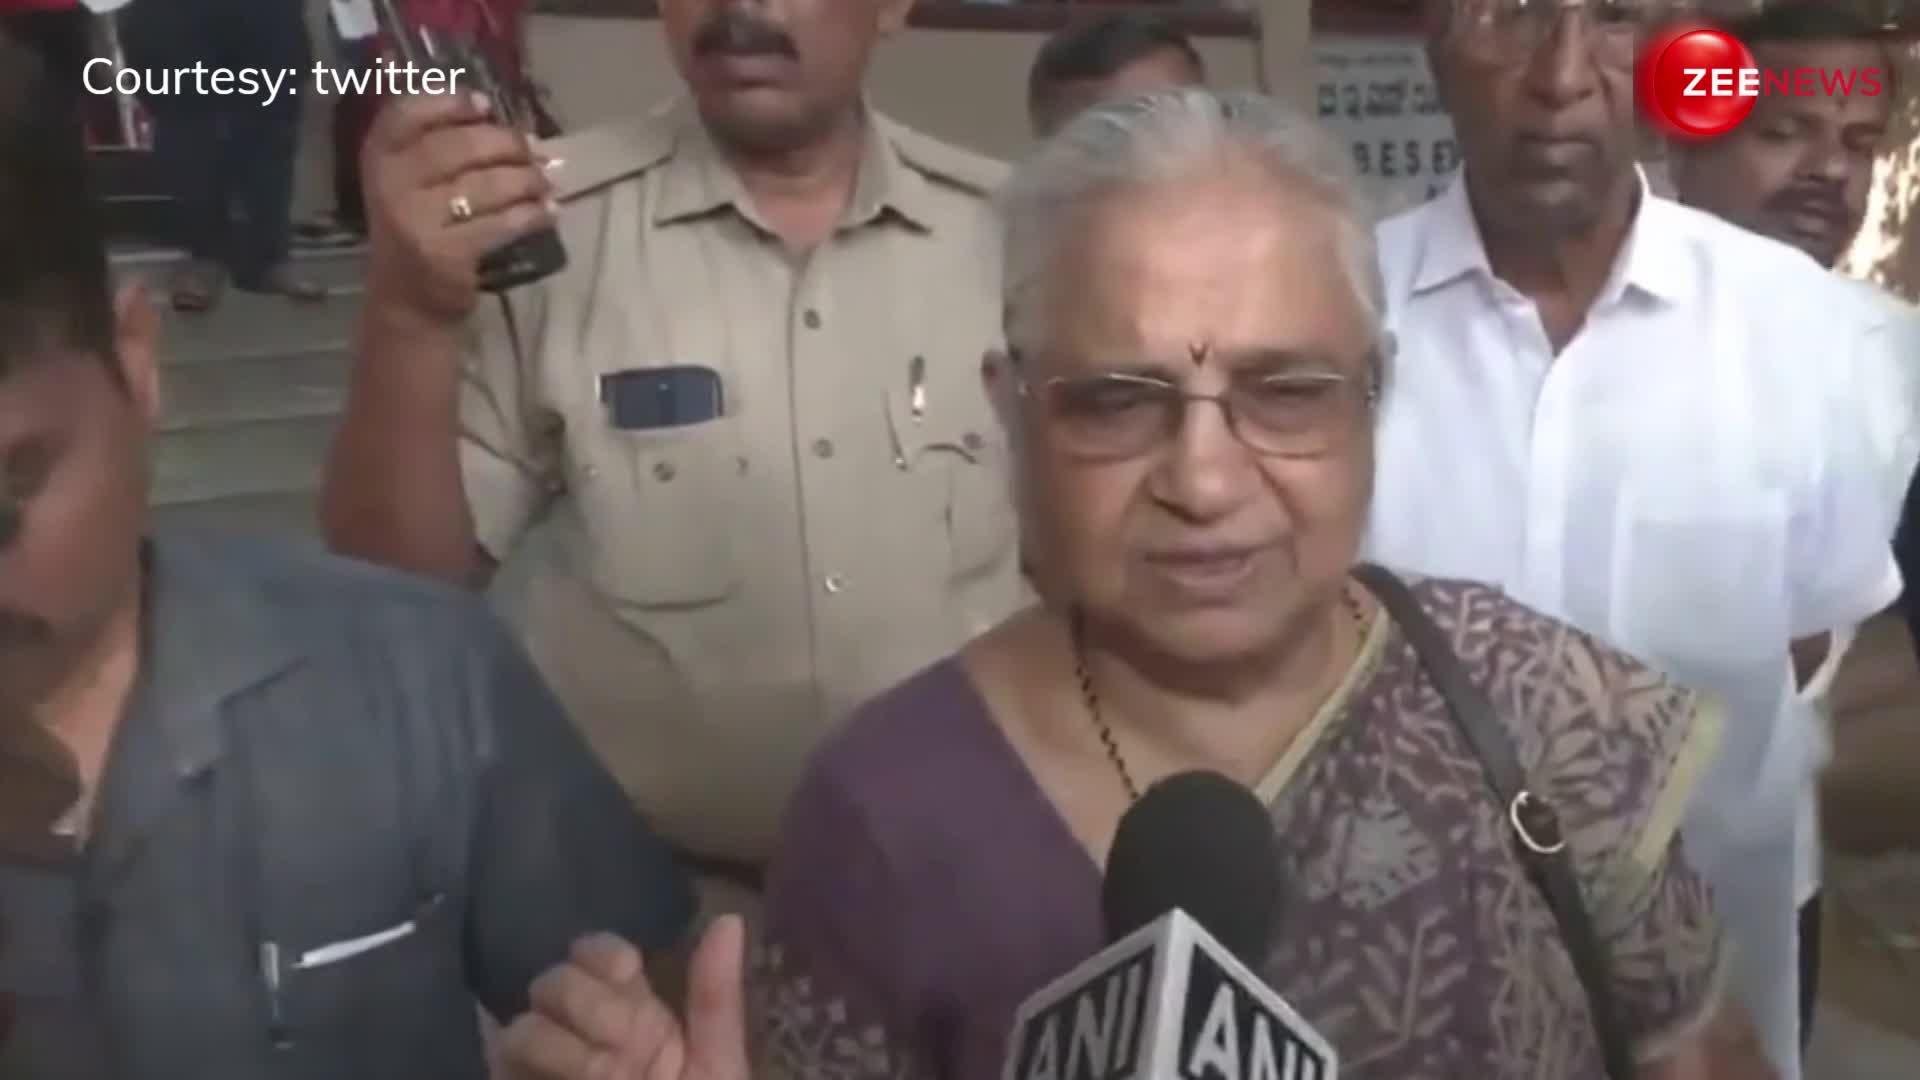 बेंगलुरु: वोट डालने पहुंचीं Sudha Murthy कहा- घर पर मत बैठो, बाहर आओ और वोट करो, अपना नेता चुनो...